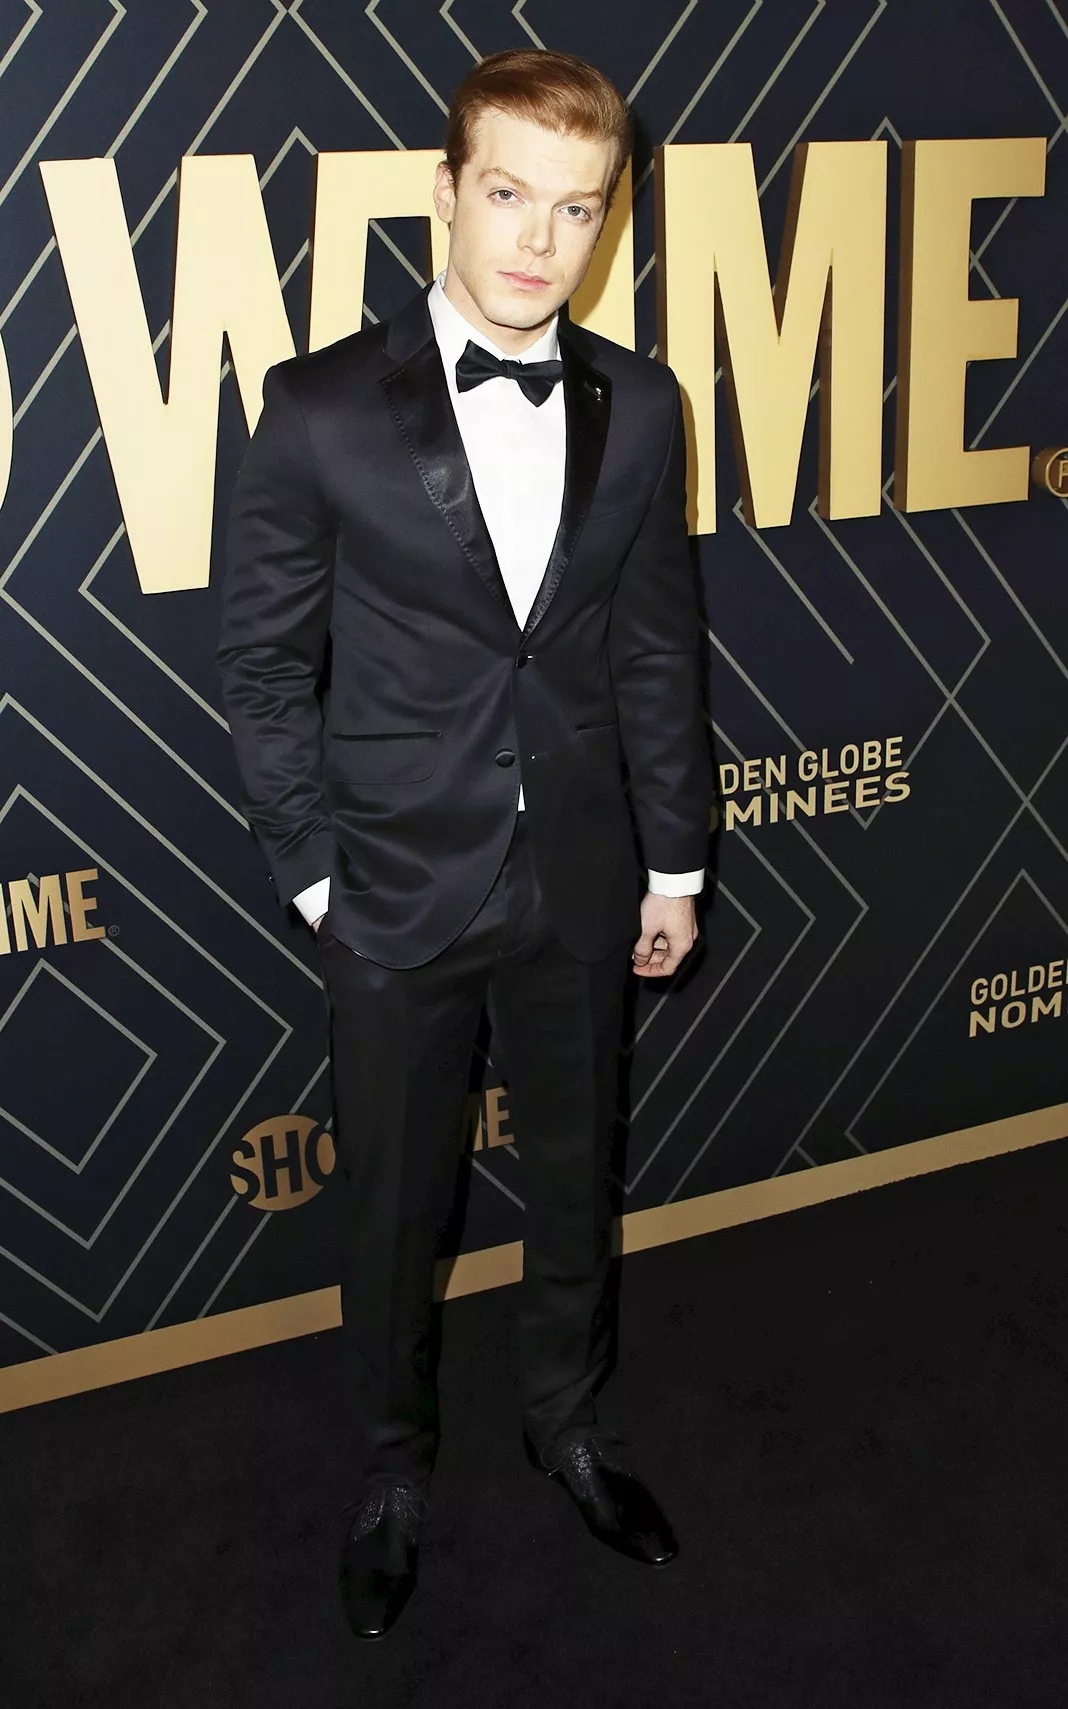 Камерон Монахэн на празднике в честь номинантов на «Золотой глобус» в Западном Голливуде, 4 января 2020 г.